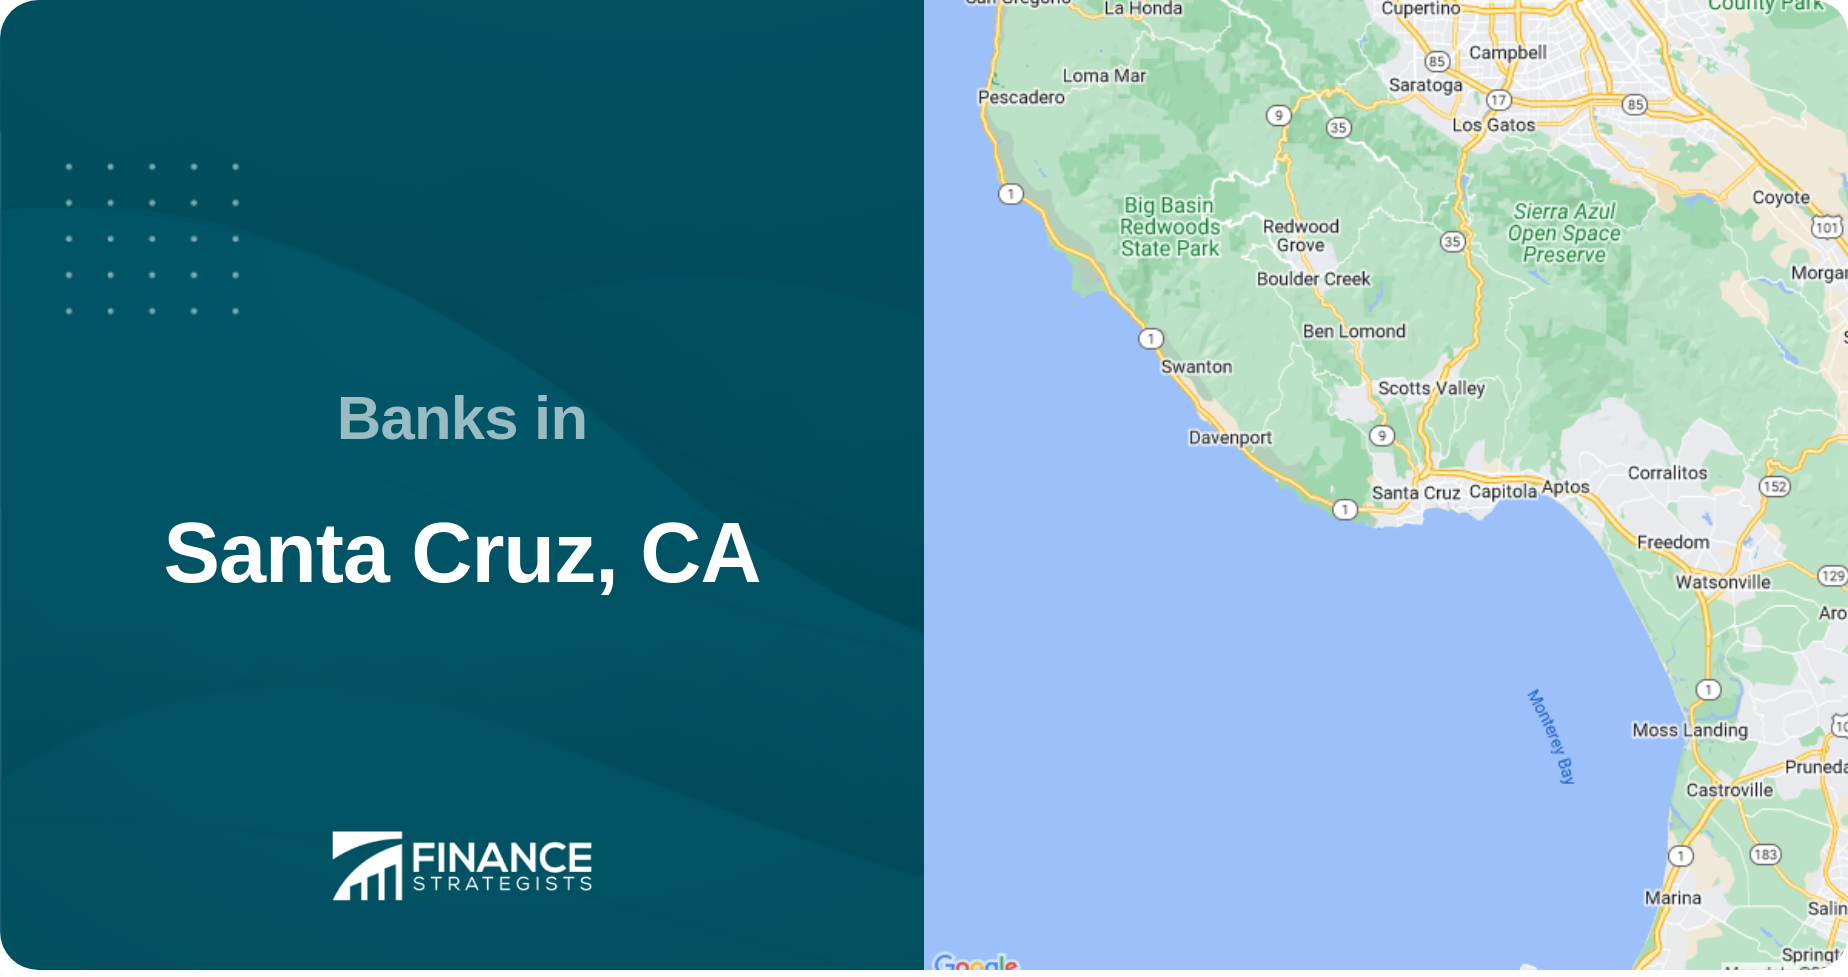 Banks in Santa Cruz, CA